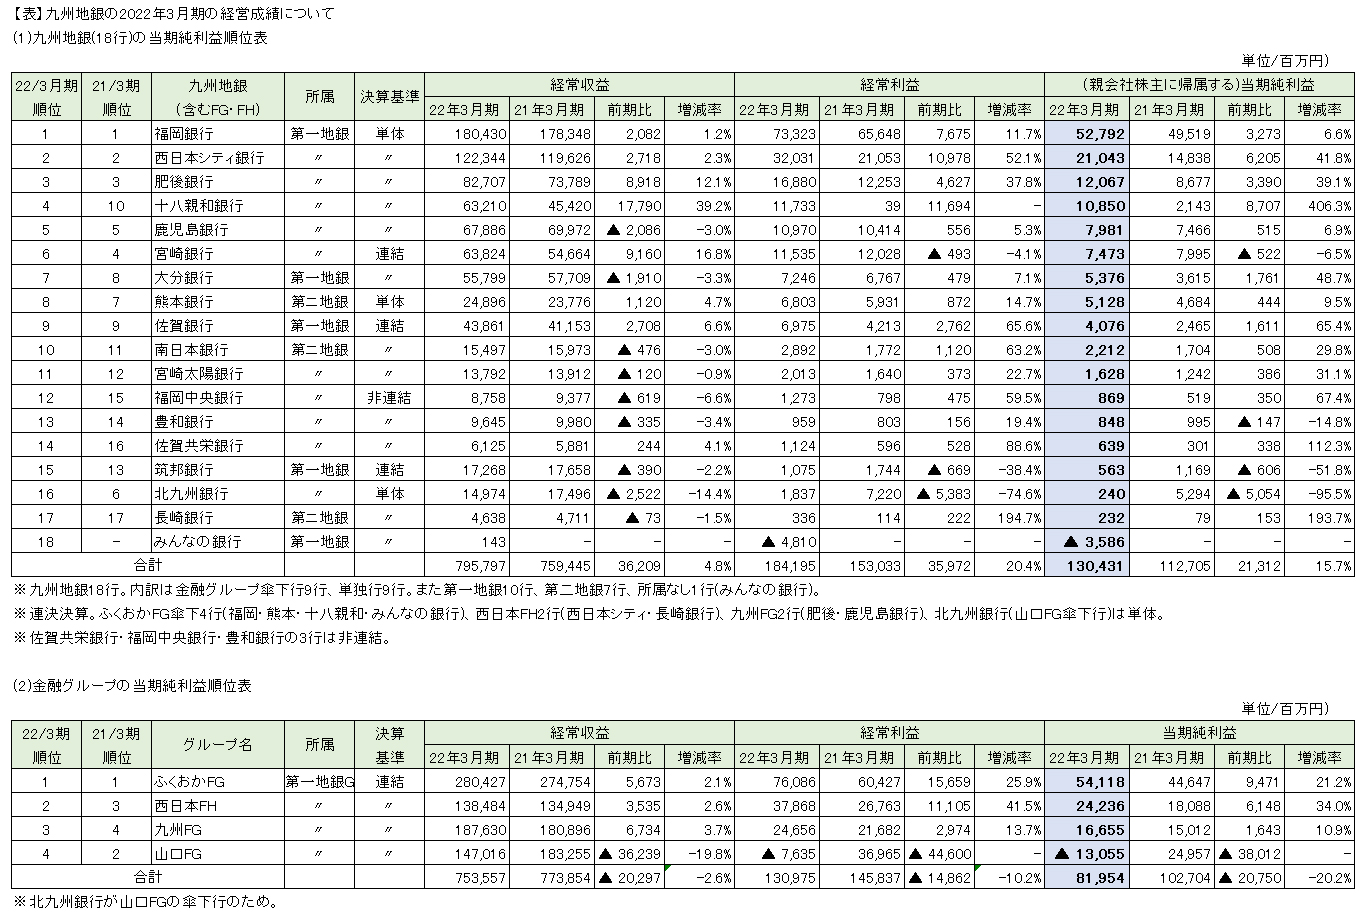 【表】九州地銀の2022年3月期の経営成績について